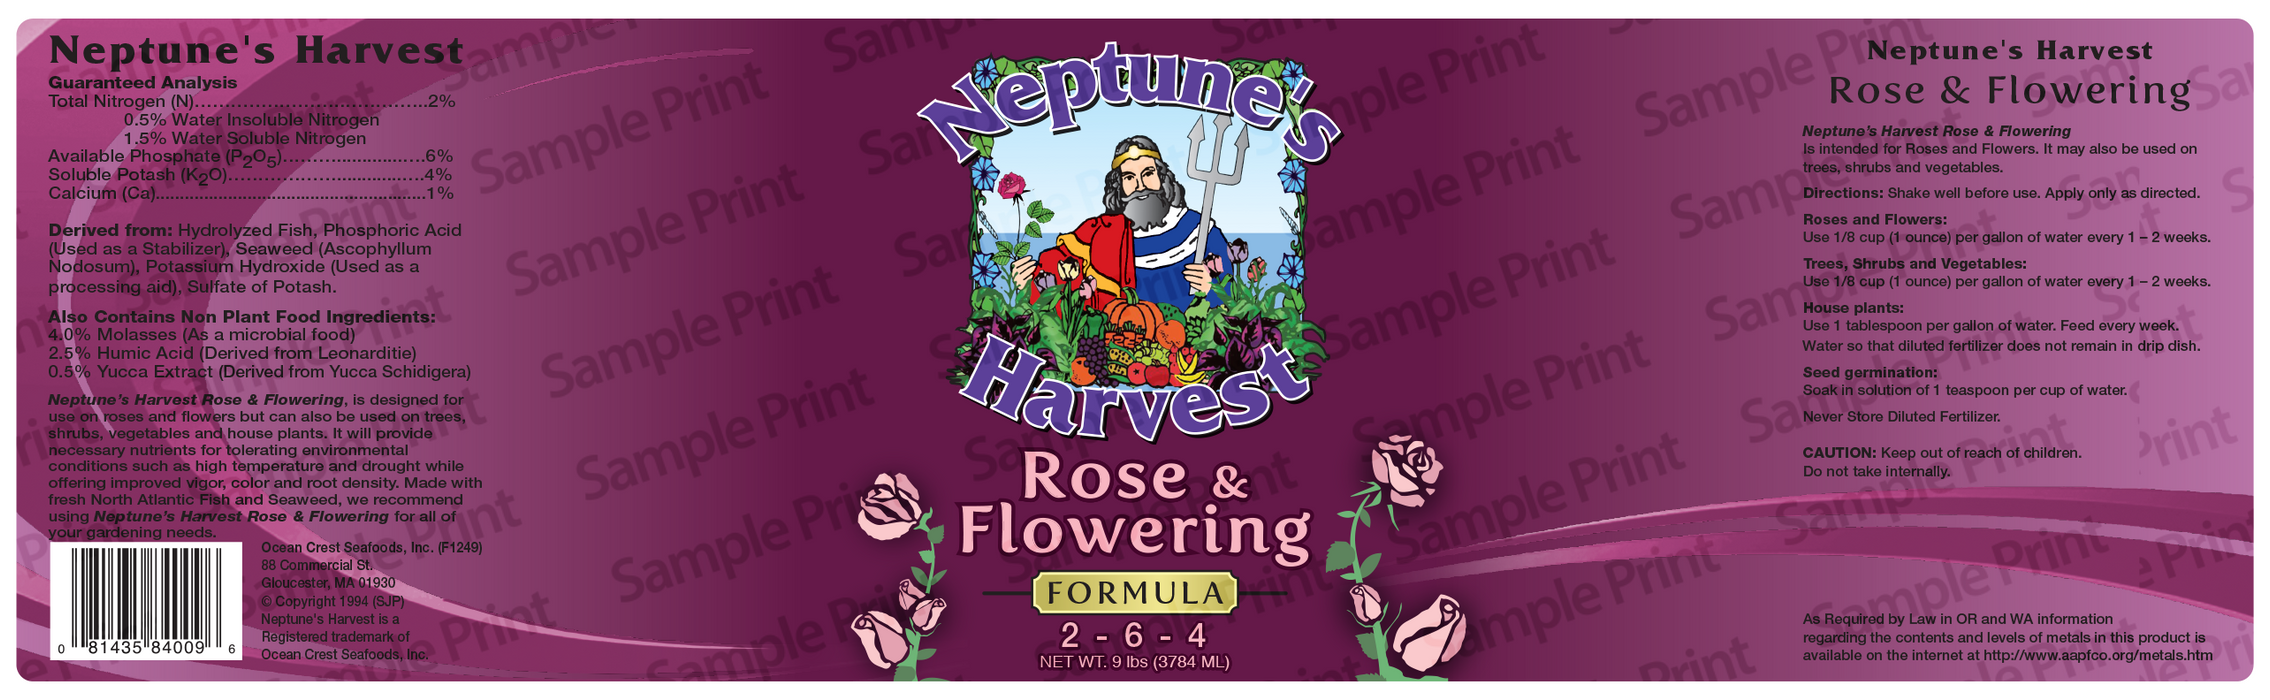 Neptune's Harvest Rose & Flowering (2-6-4) - 1 Gallon